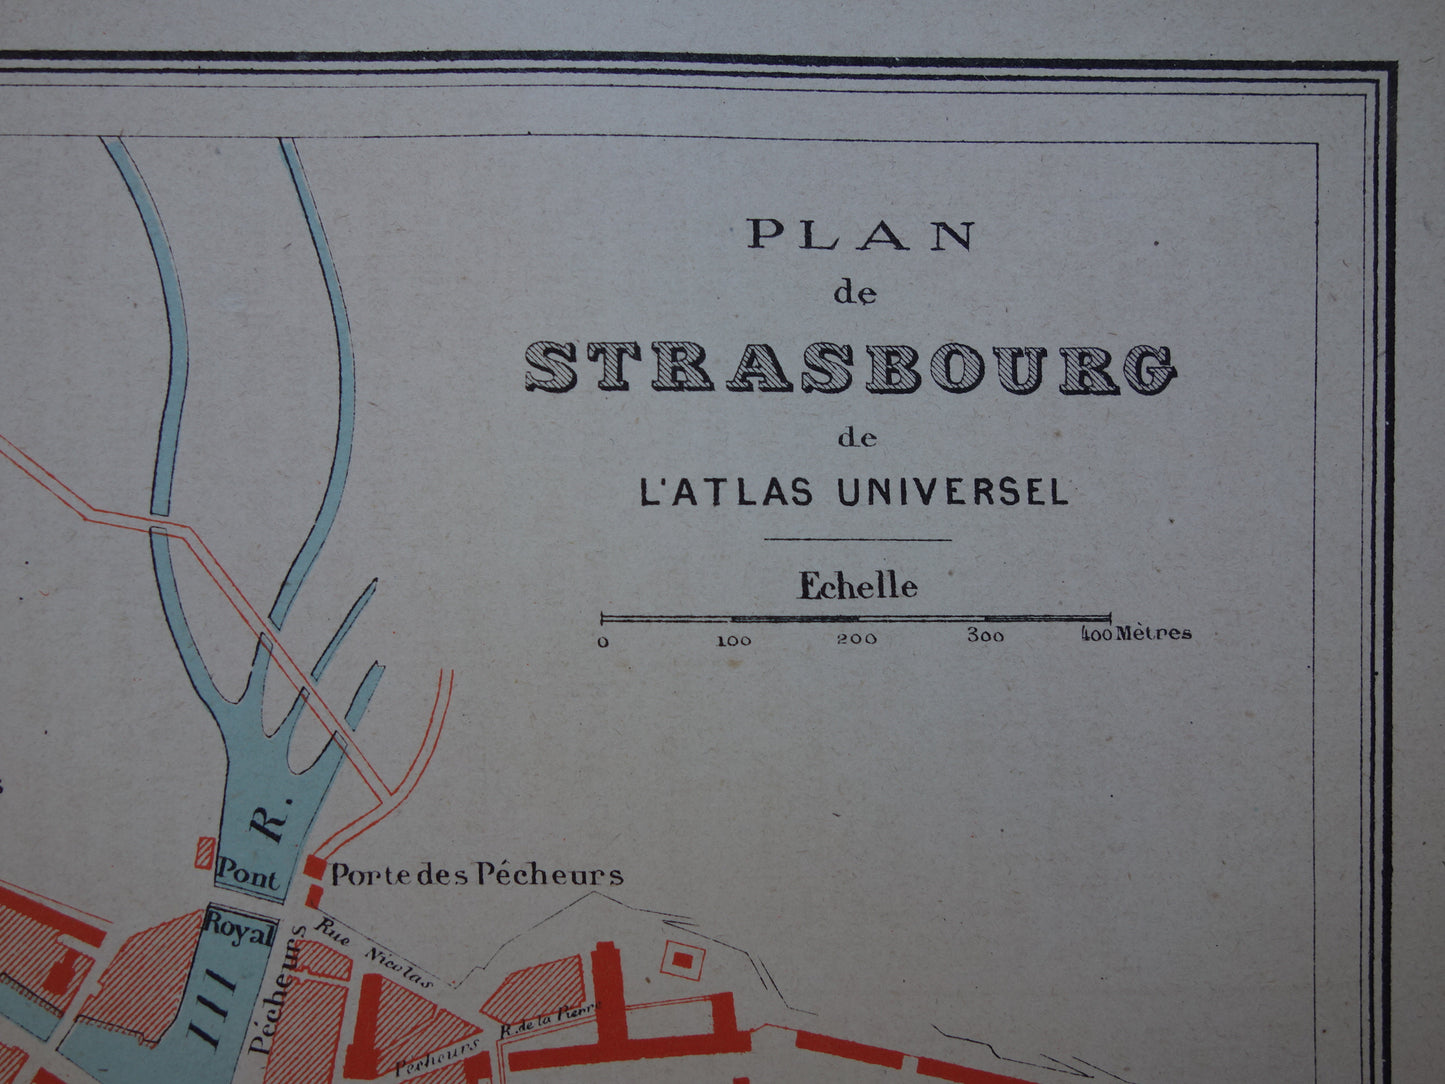 Straatsburg oude kaart van Strasbourg Frankrijk uit 1877 originele antieke plattegrond vintage kaarten